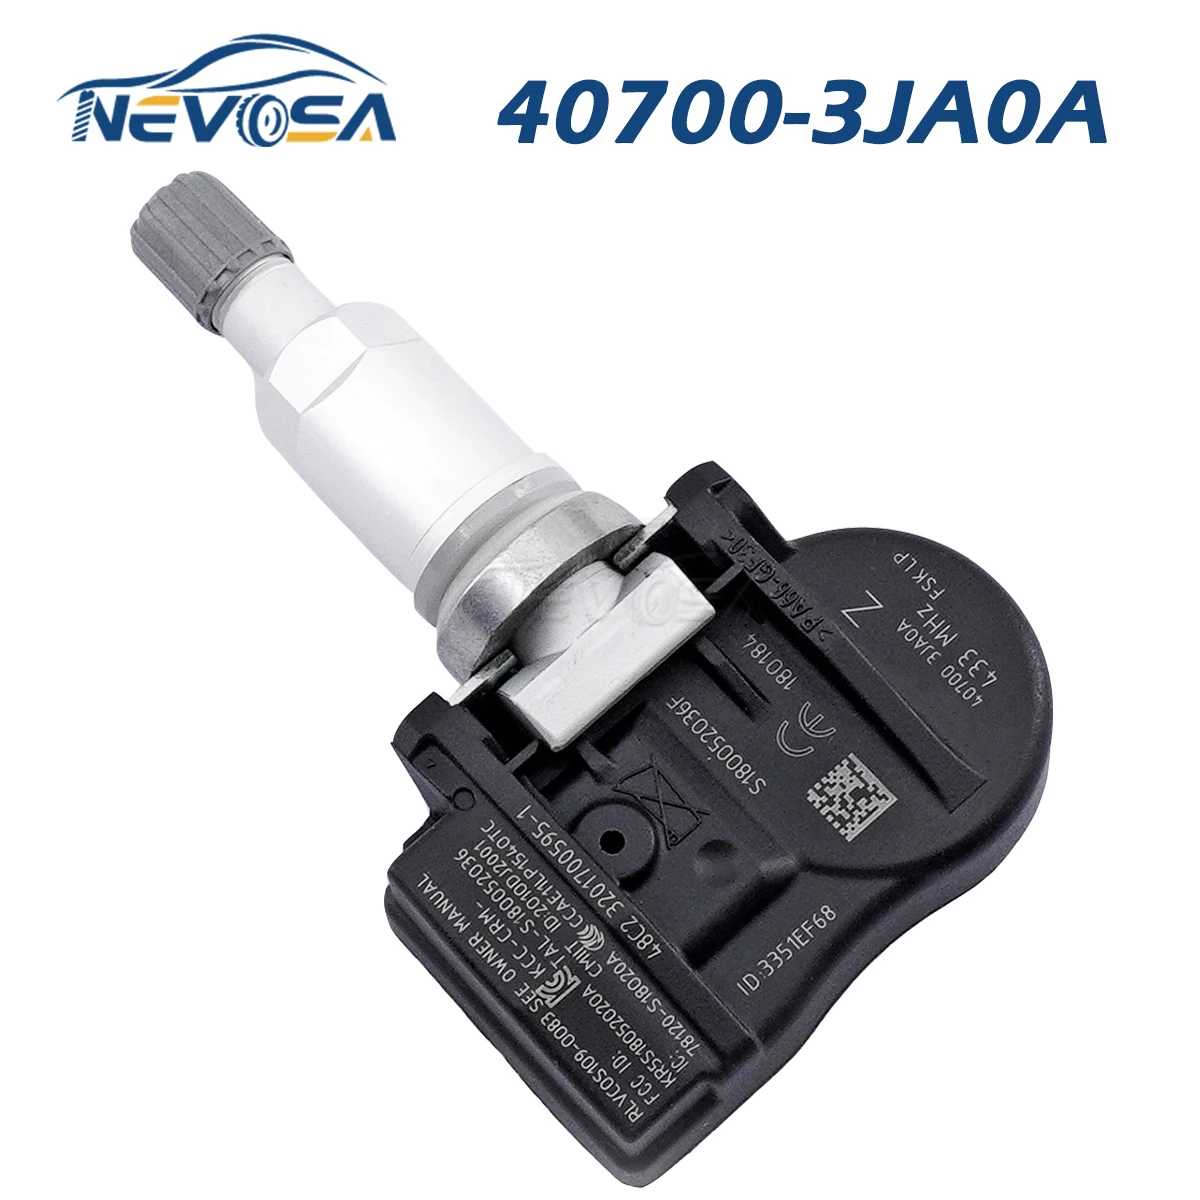 

NEVOSA 40700-3JA0A TPMS Sensor For Infiniti JX35 Q50 Q60 Q70 QX50 QX60 QX70 Nissan Altima Murano Pathfinder Teana 40700-3JA0B